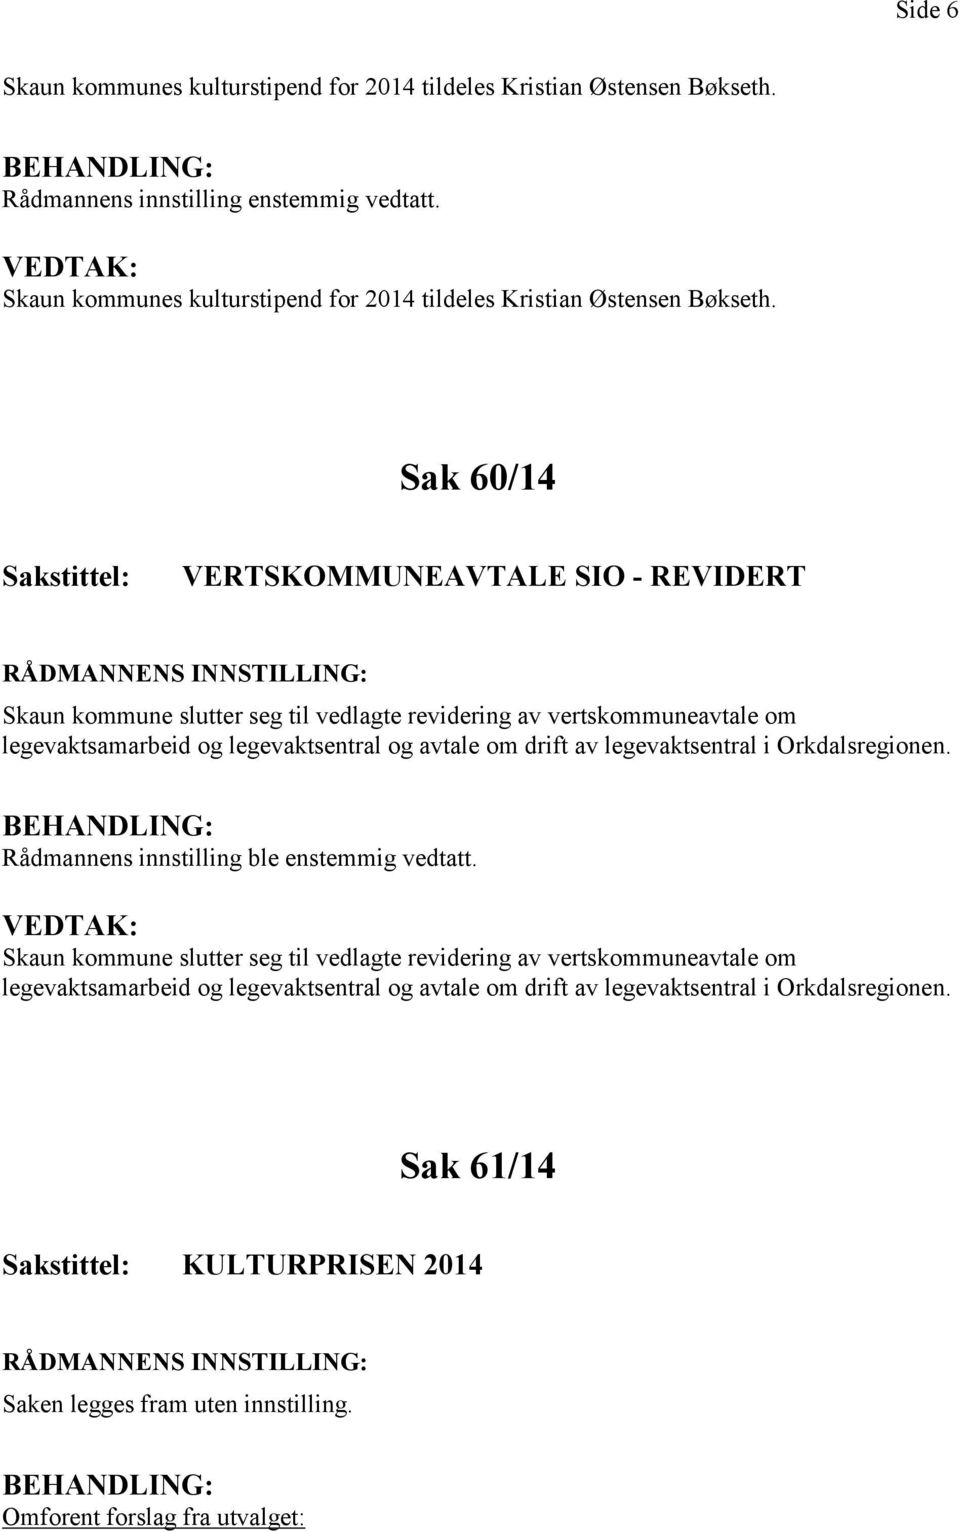 Sak 60/14 VERTSKOMMUNEAVTALE SIO - REVIDERT Skaun kommune slutter seg til vedlagte revidering av vertskommuneavtale om legevaktsamarbeid og legevaktsentral og avtale om drift av